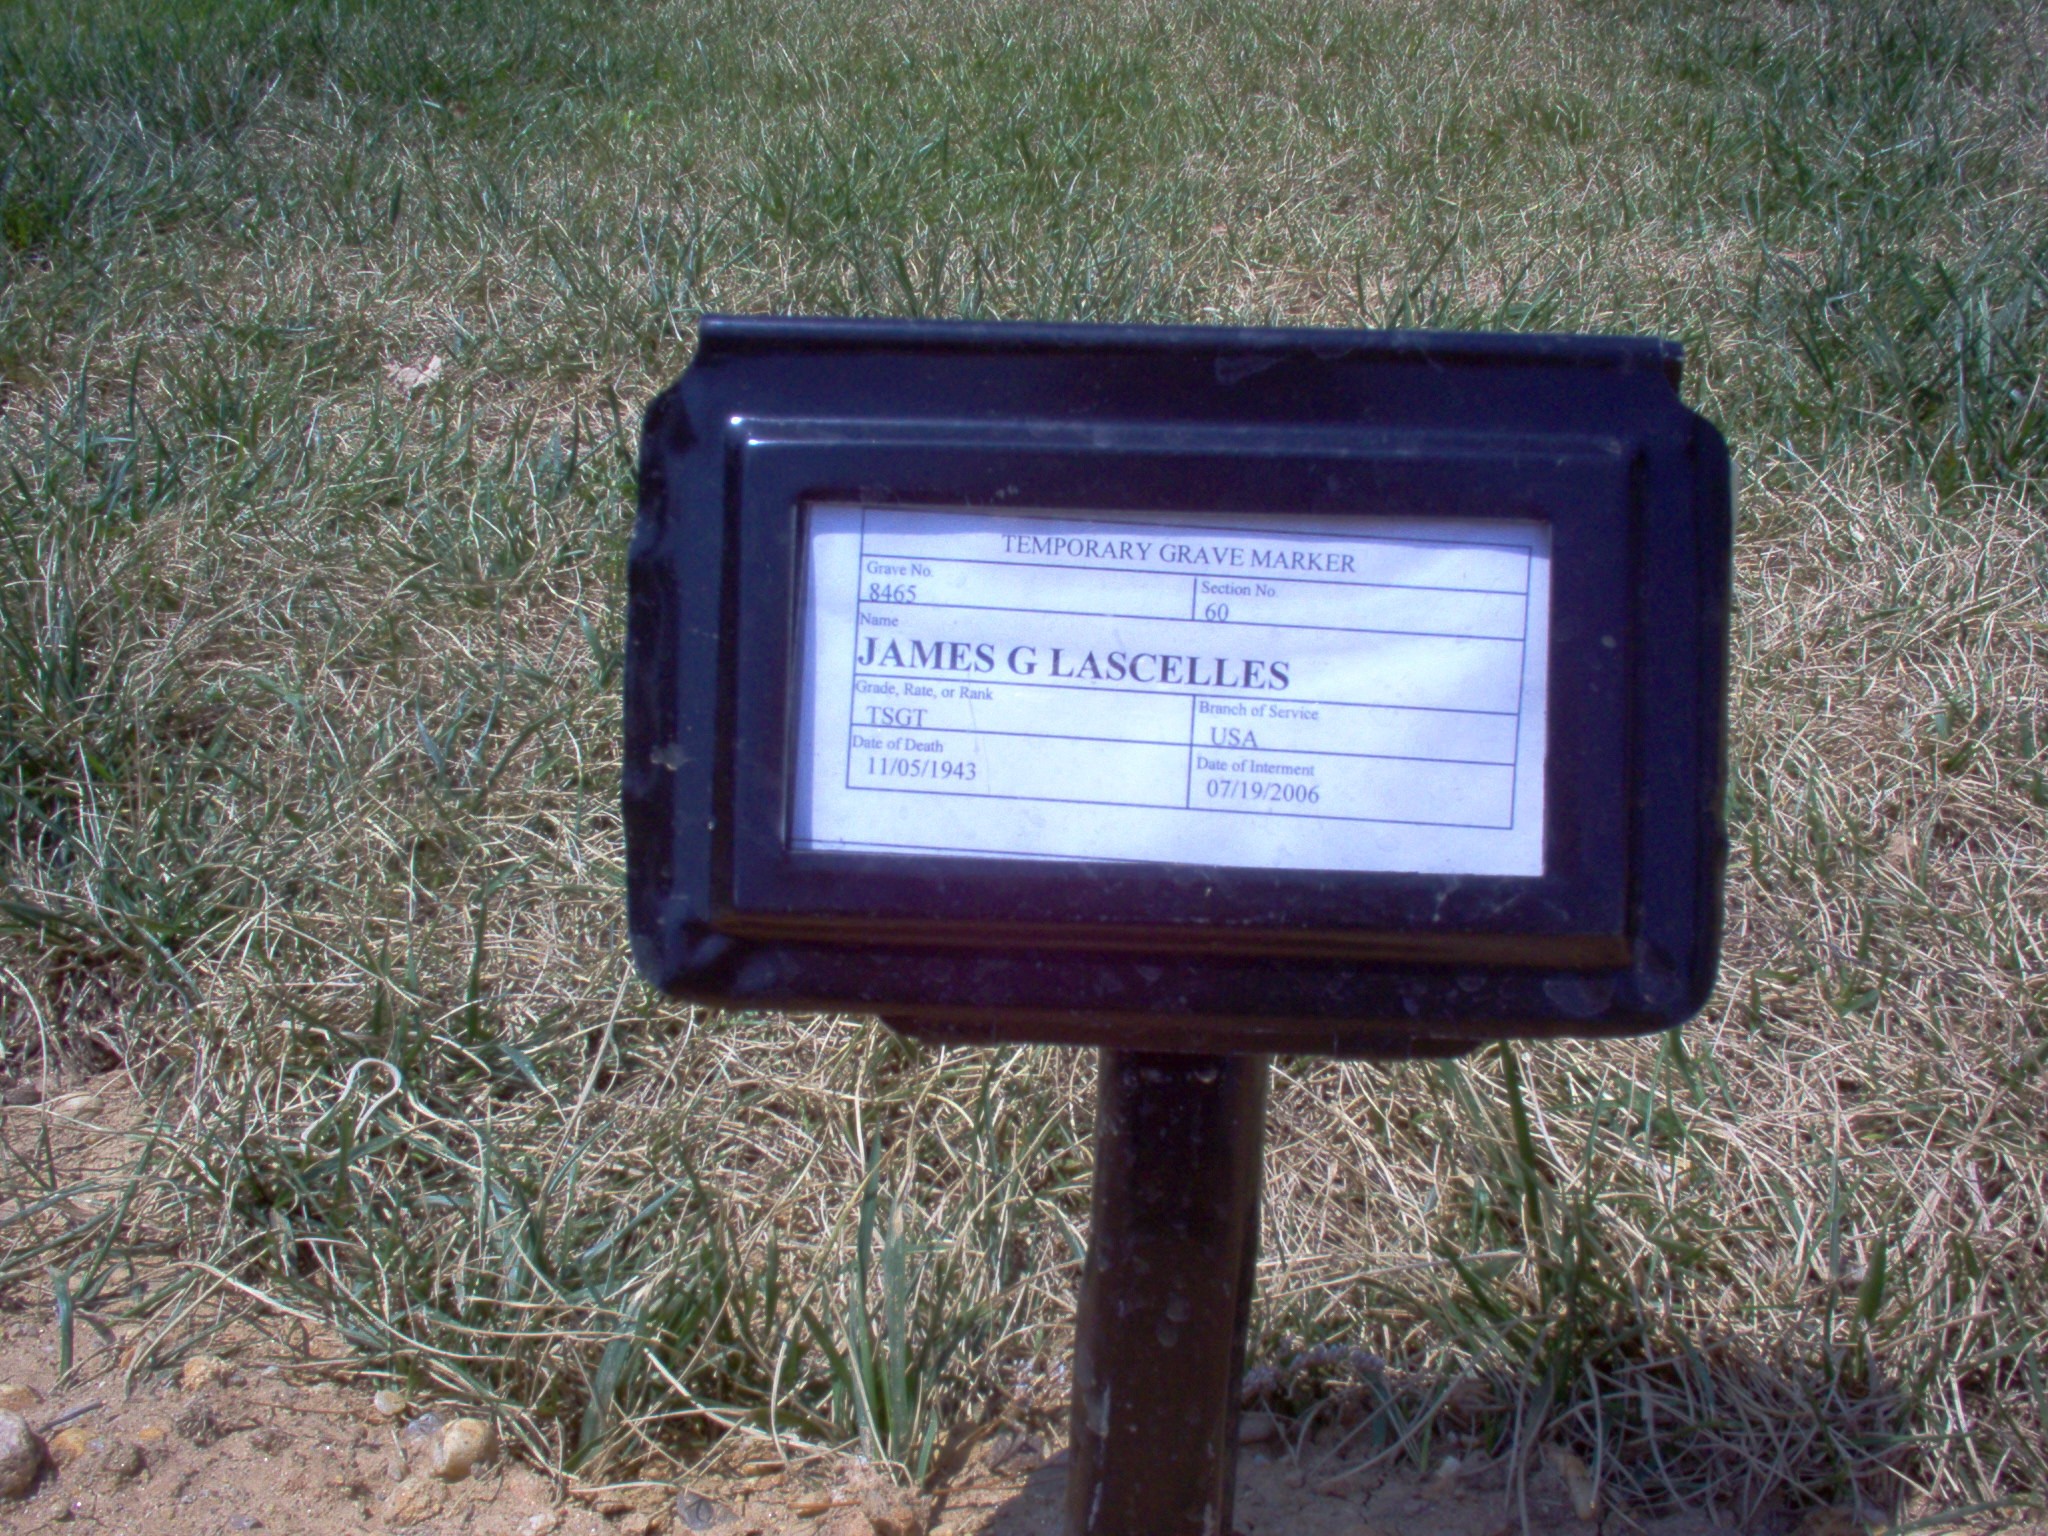 jglascelles-gravesite-photo-august-2006-001